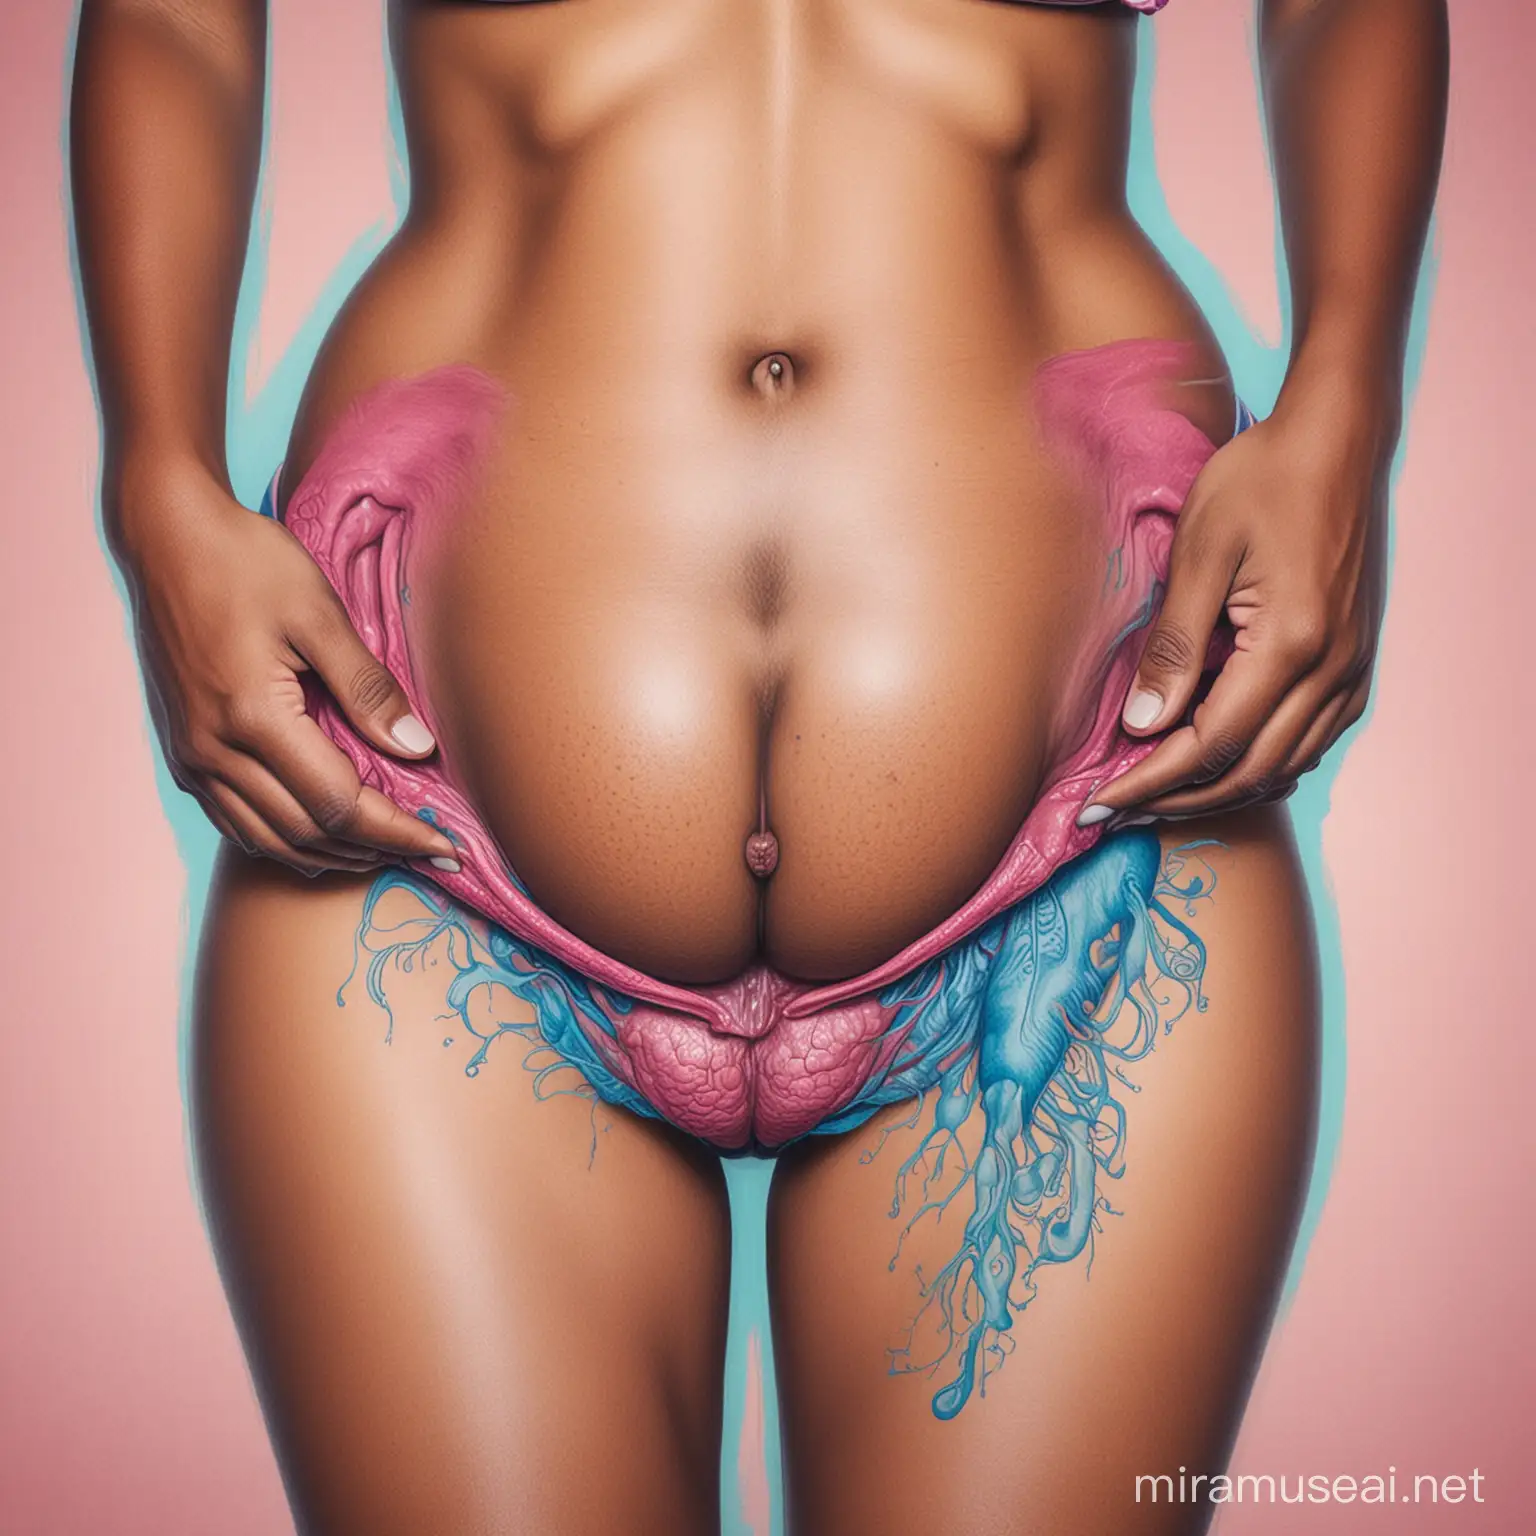 Der Bauch einer schwarzen Frau mit Uterus, gezeichnet in pink und blau 